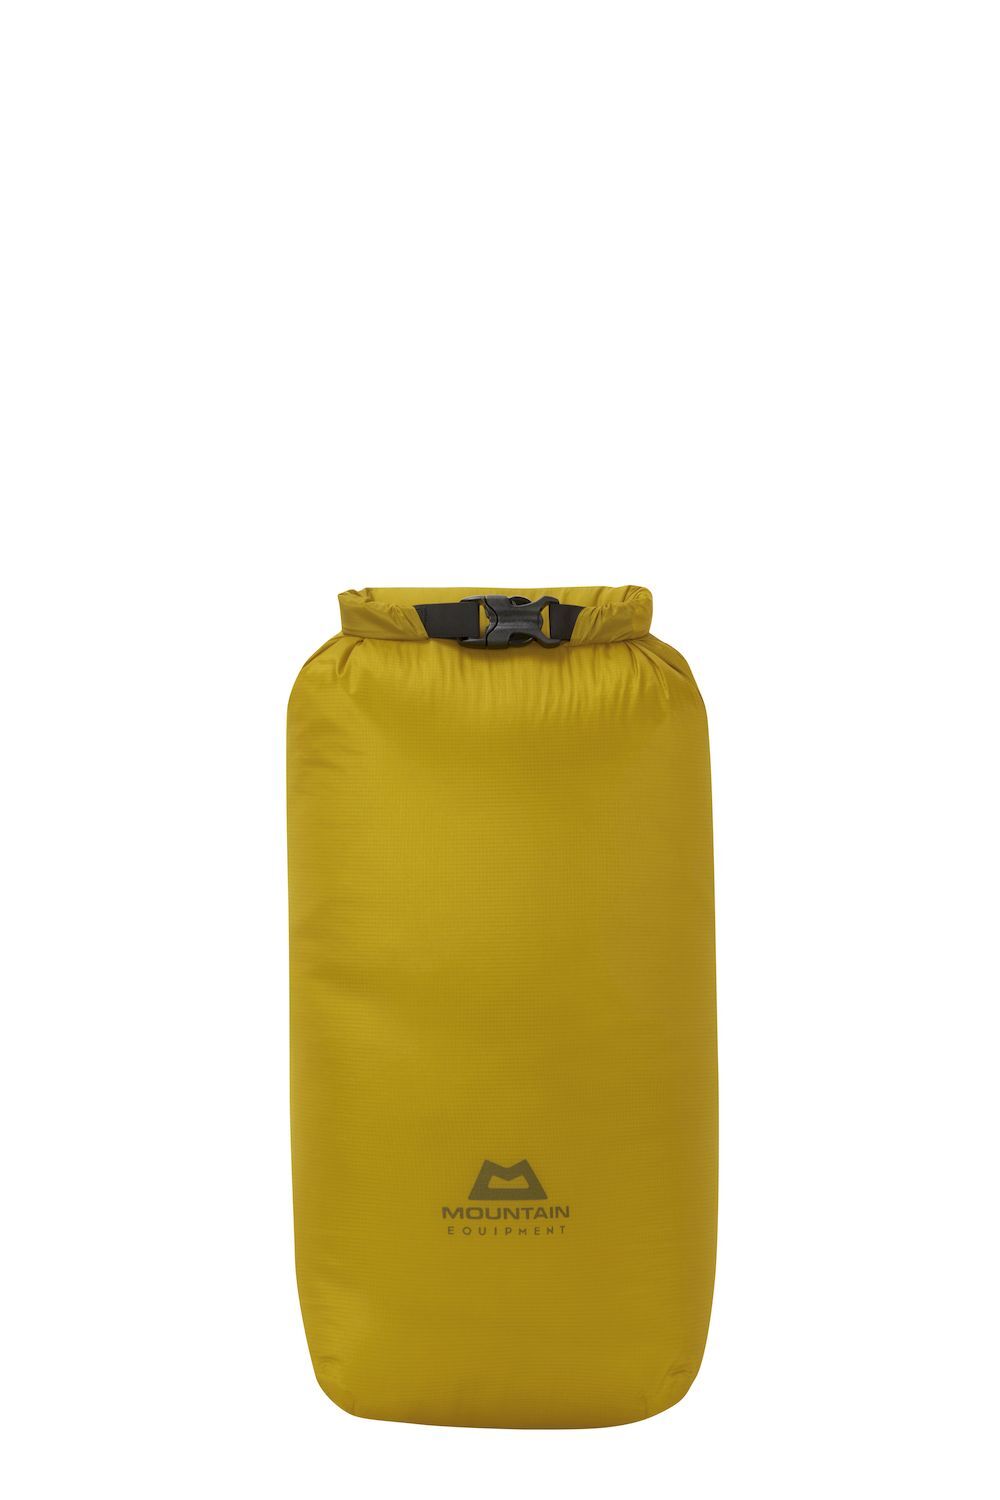 Mountain Equipment Lightweight Drybag 20L -